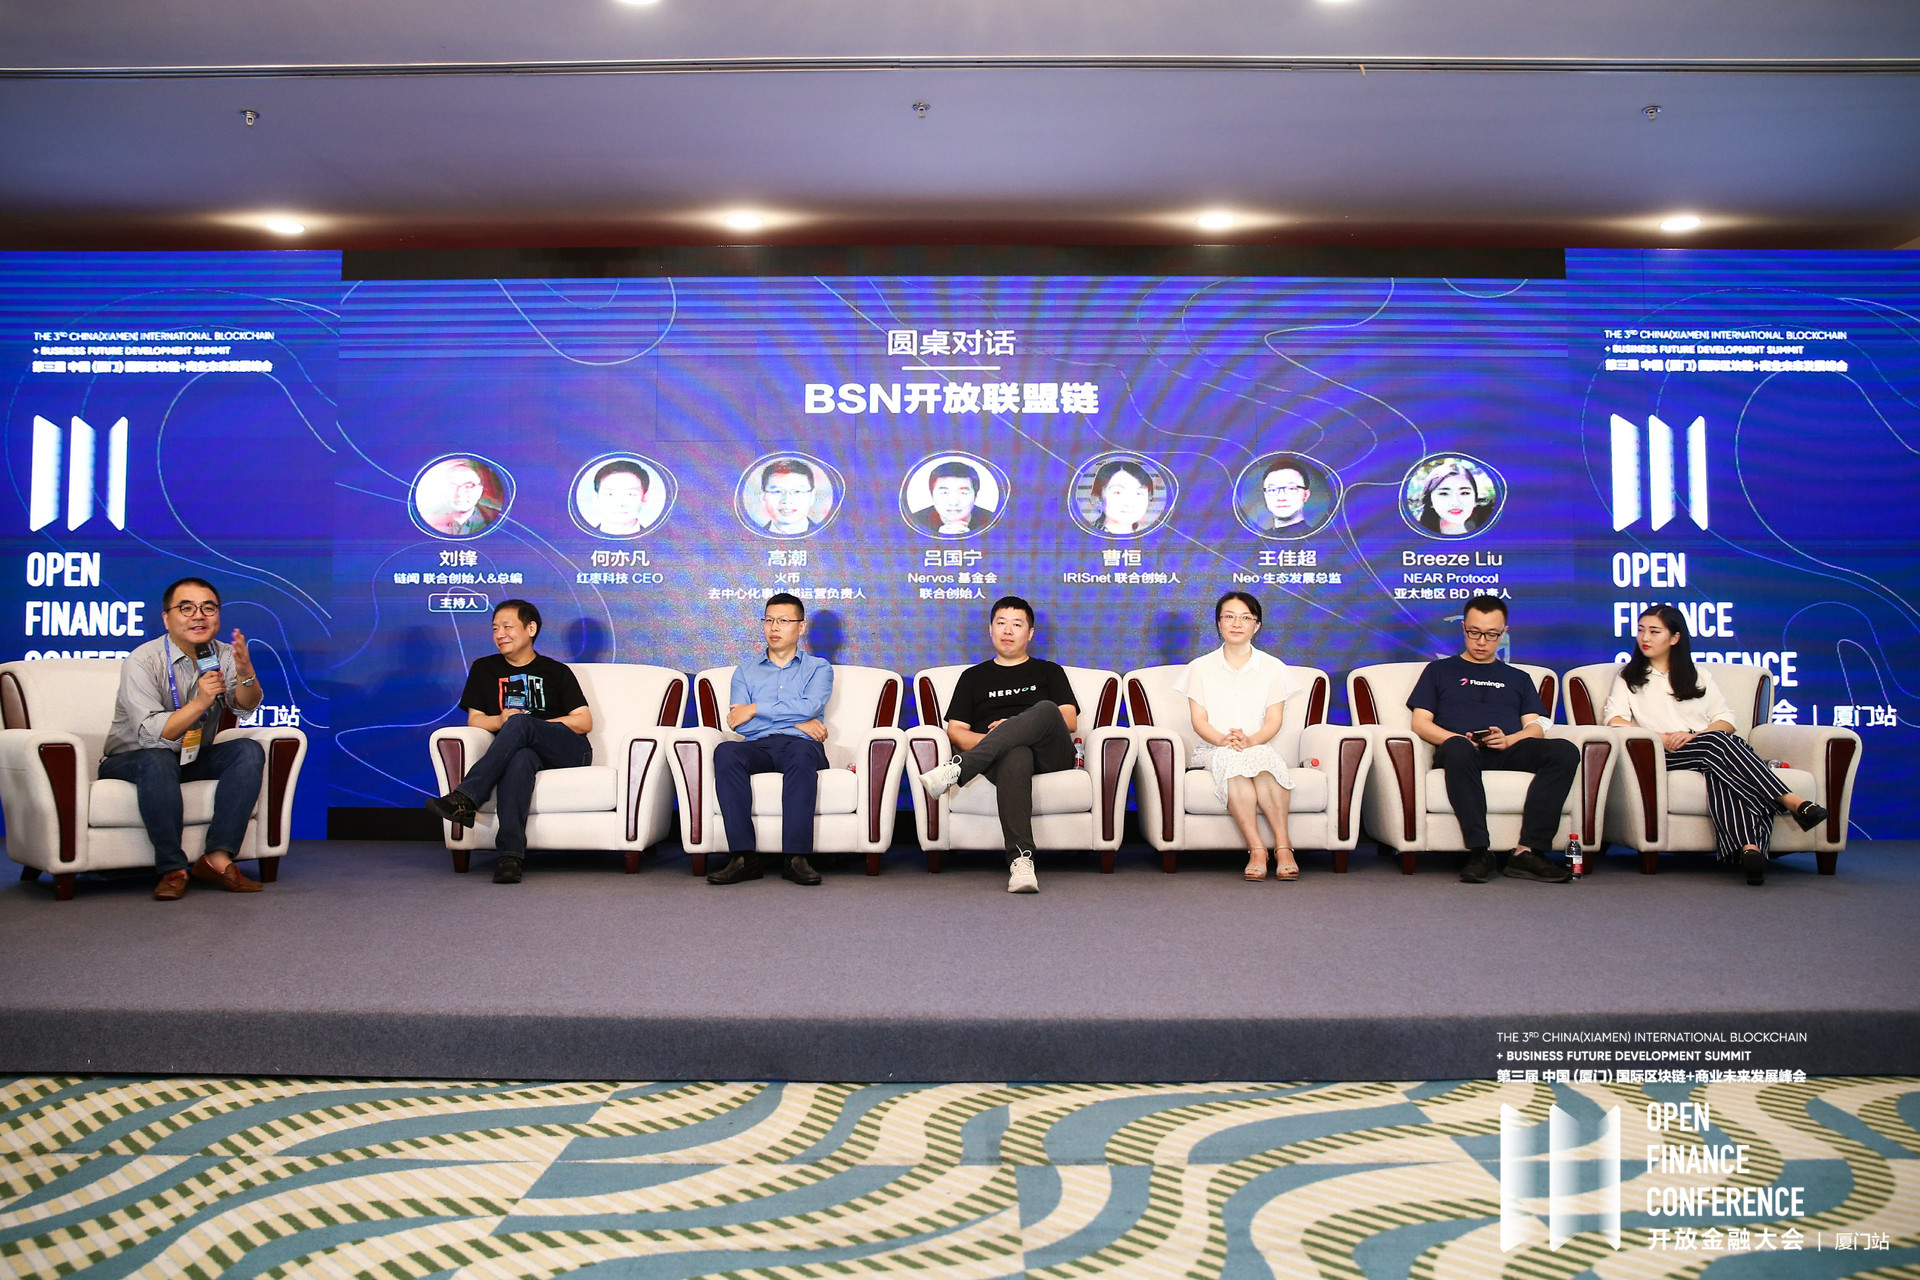 公链如何合规在中国发展？BSN 开放联盟链项目即将启动，提出公链技术在中国合法合规发展解决方案